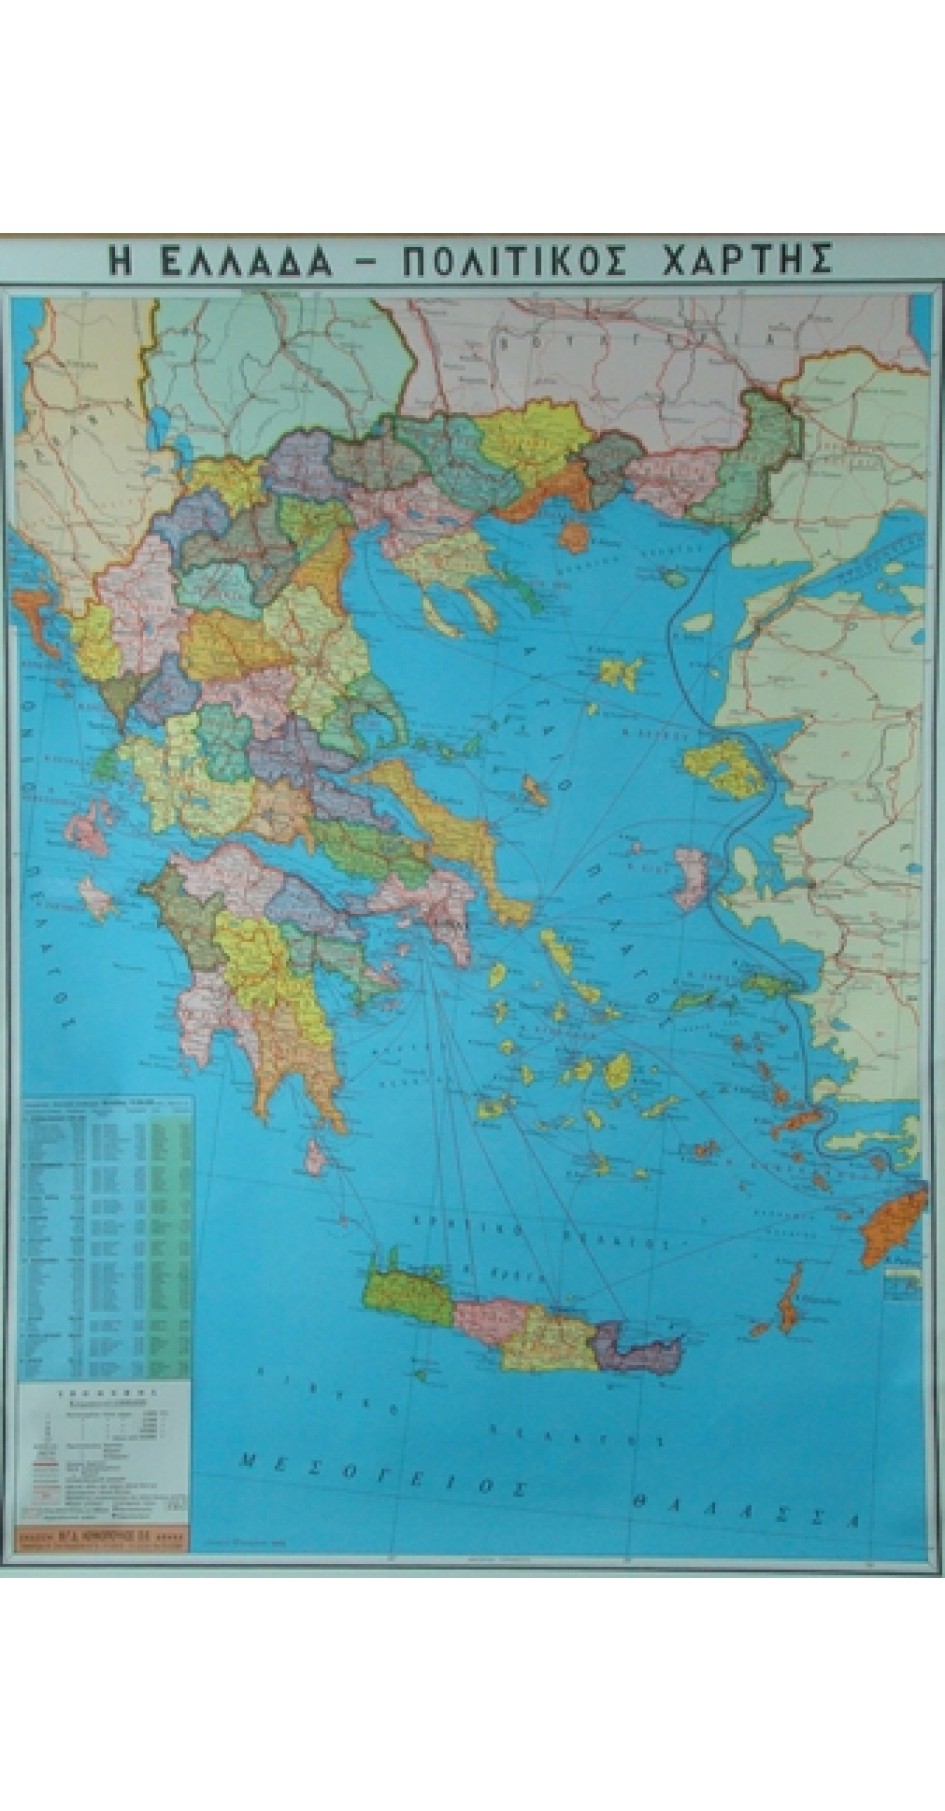 Ελλάδα πολιτικός σχολικός χάρτης (Map in Greek)